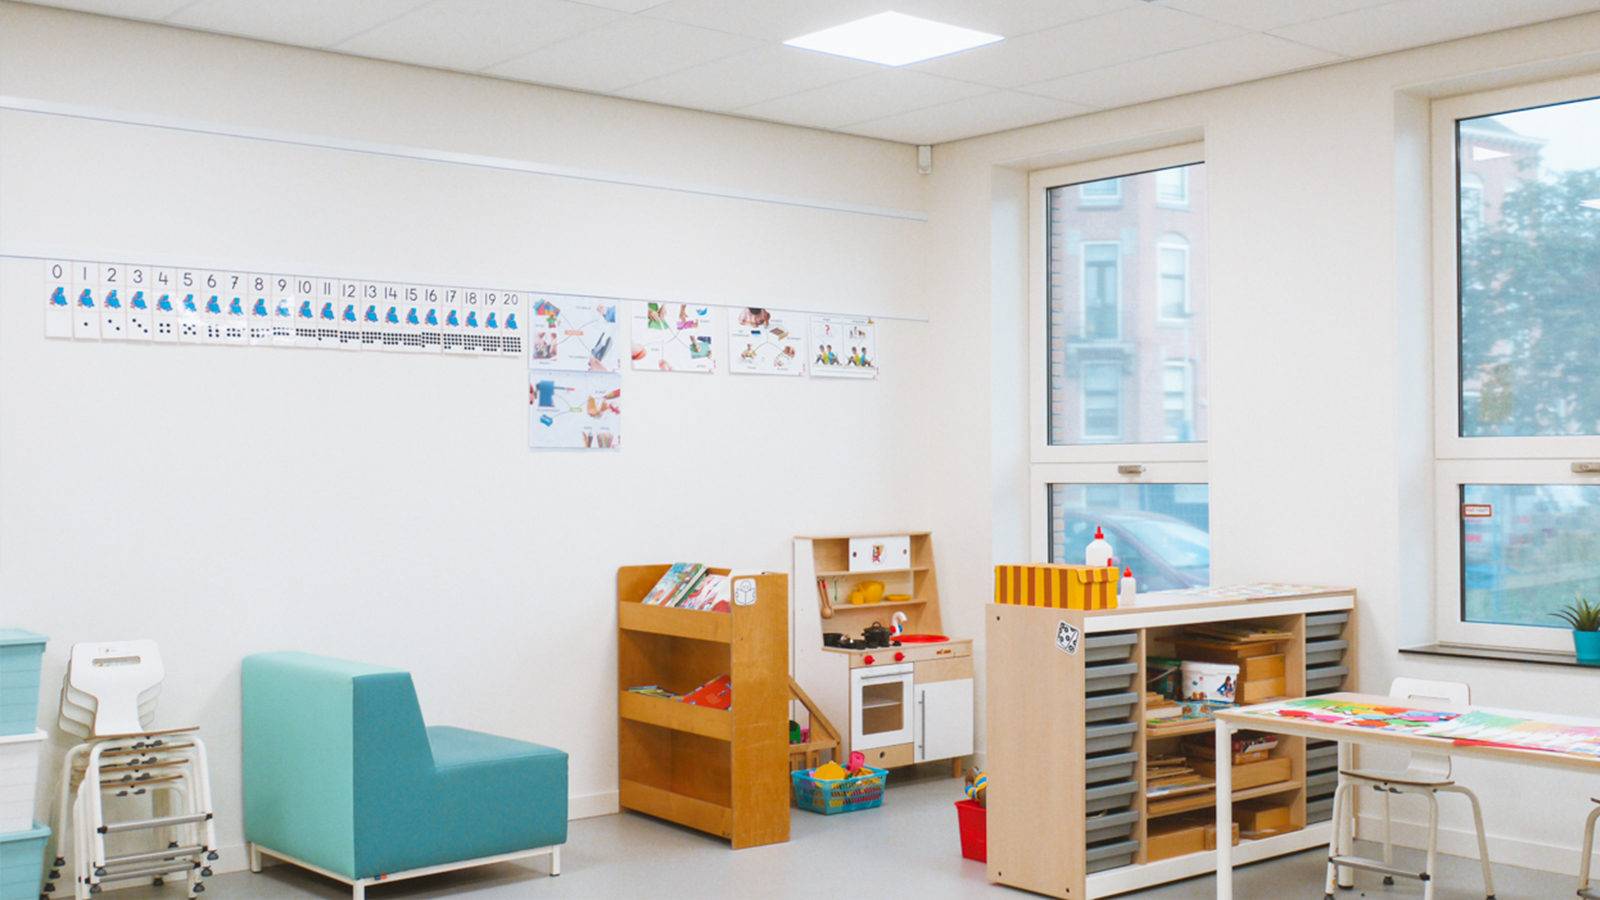 NL Info Rail ophangsysteem met kindertekeningen aan de muur in de klas